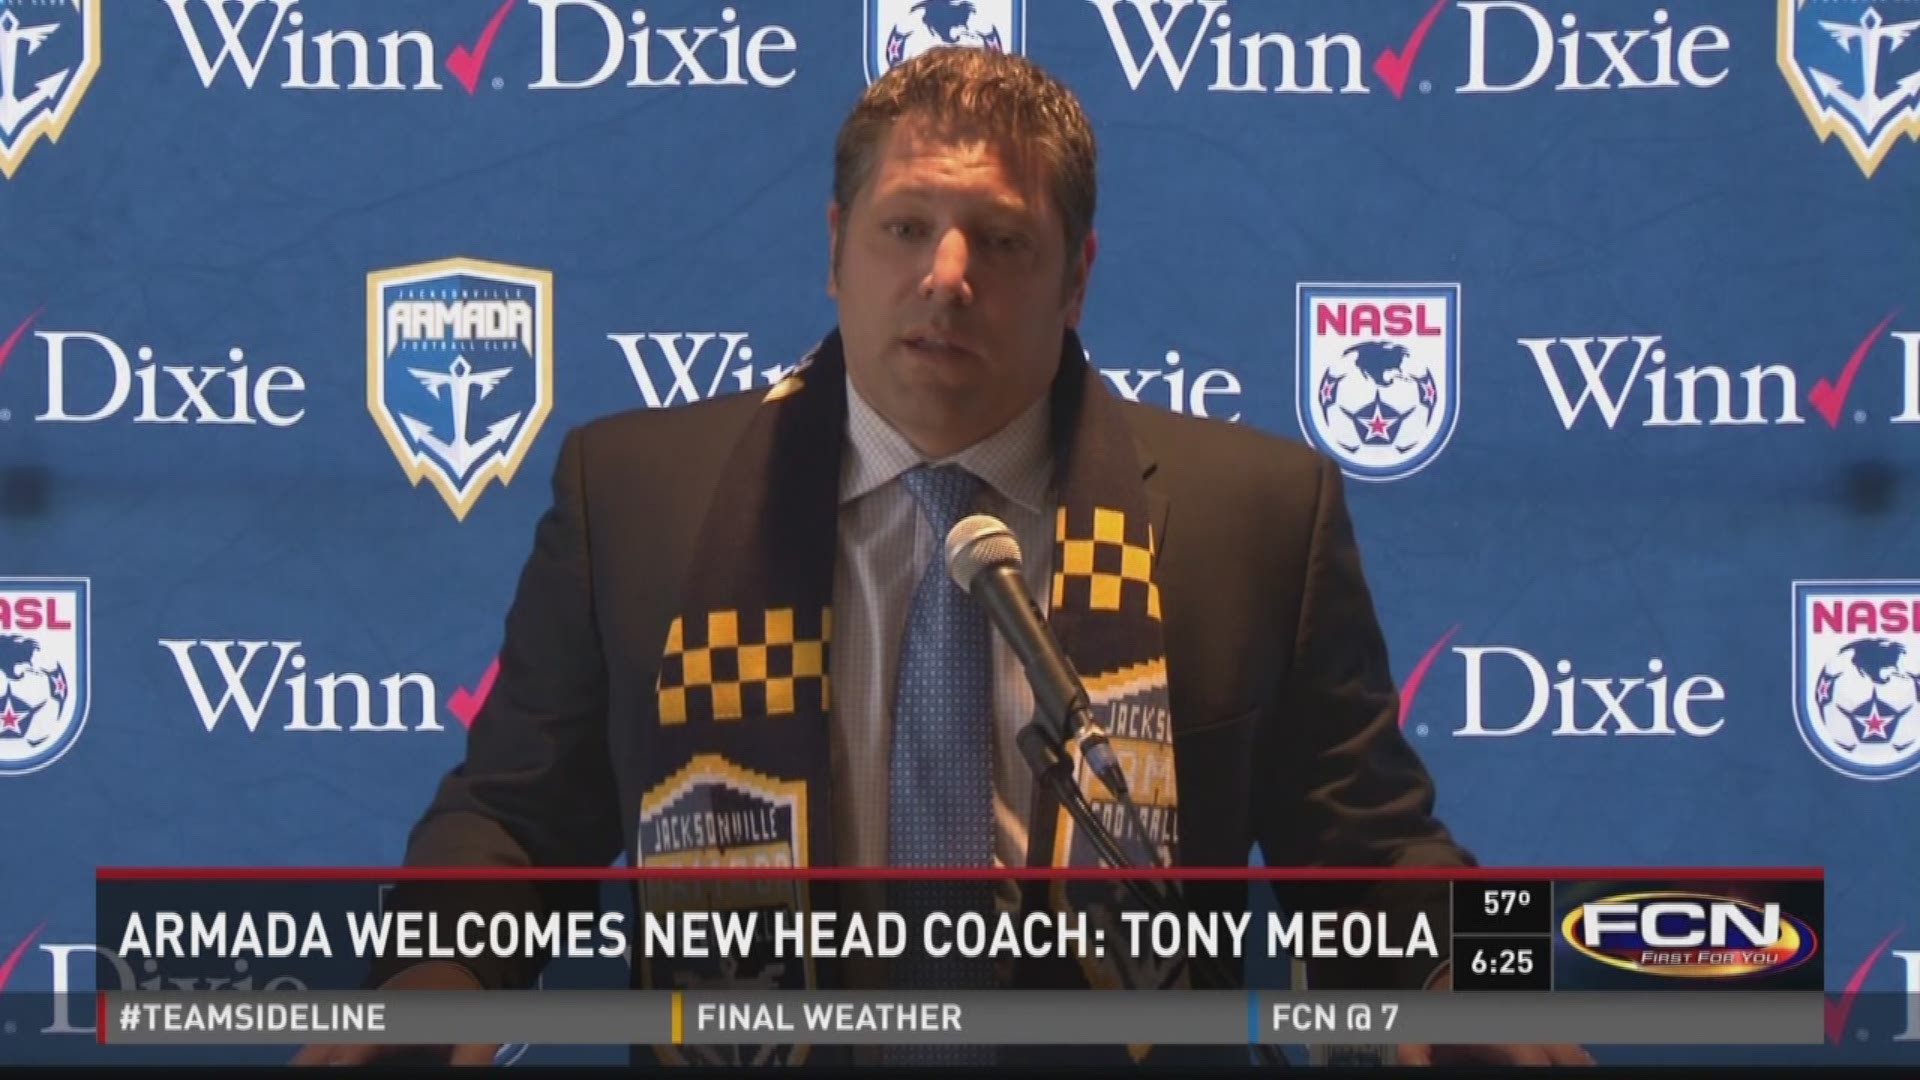 Tony Meola named Armada's new head coach